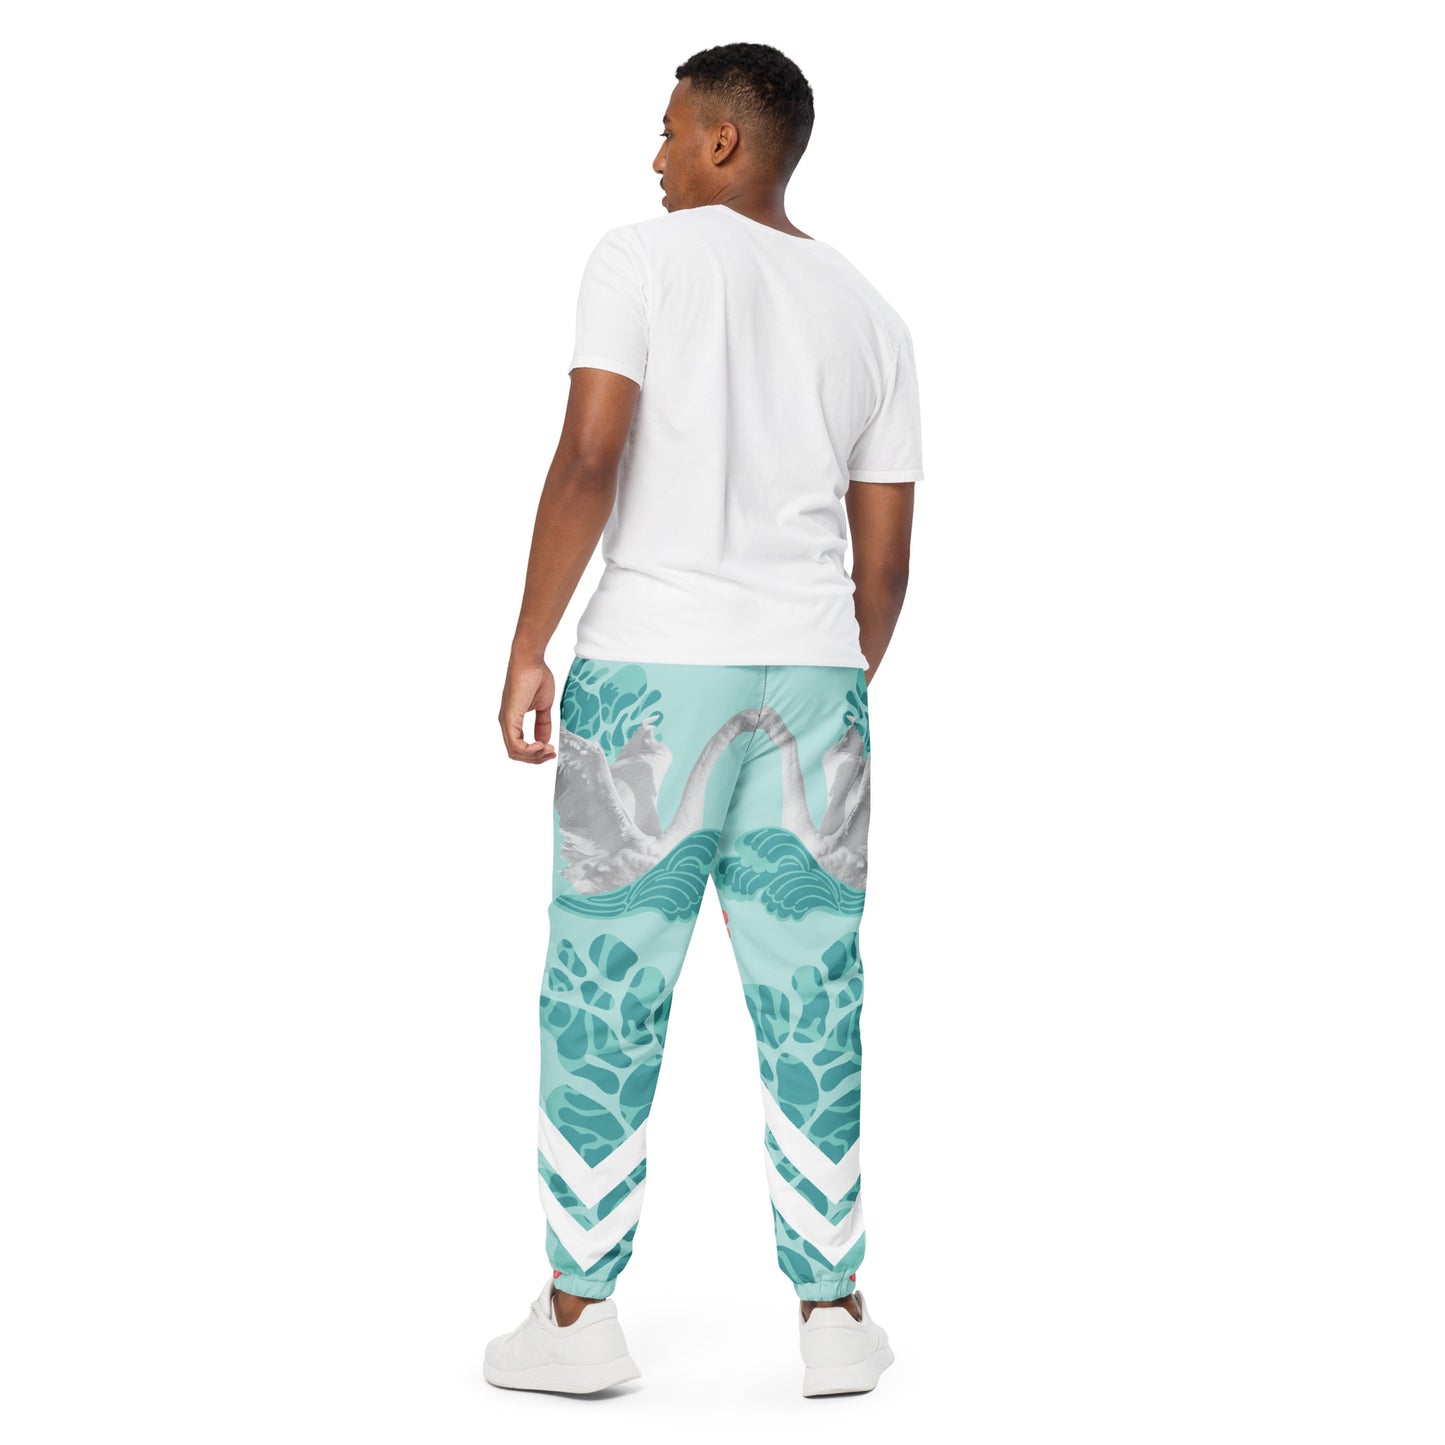 Unisex track pants #51 - Alpha Clothing